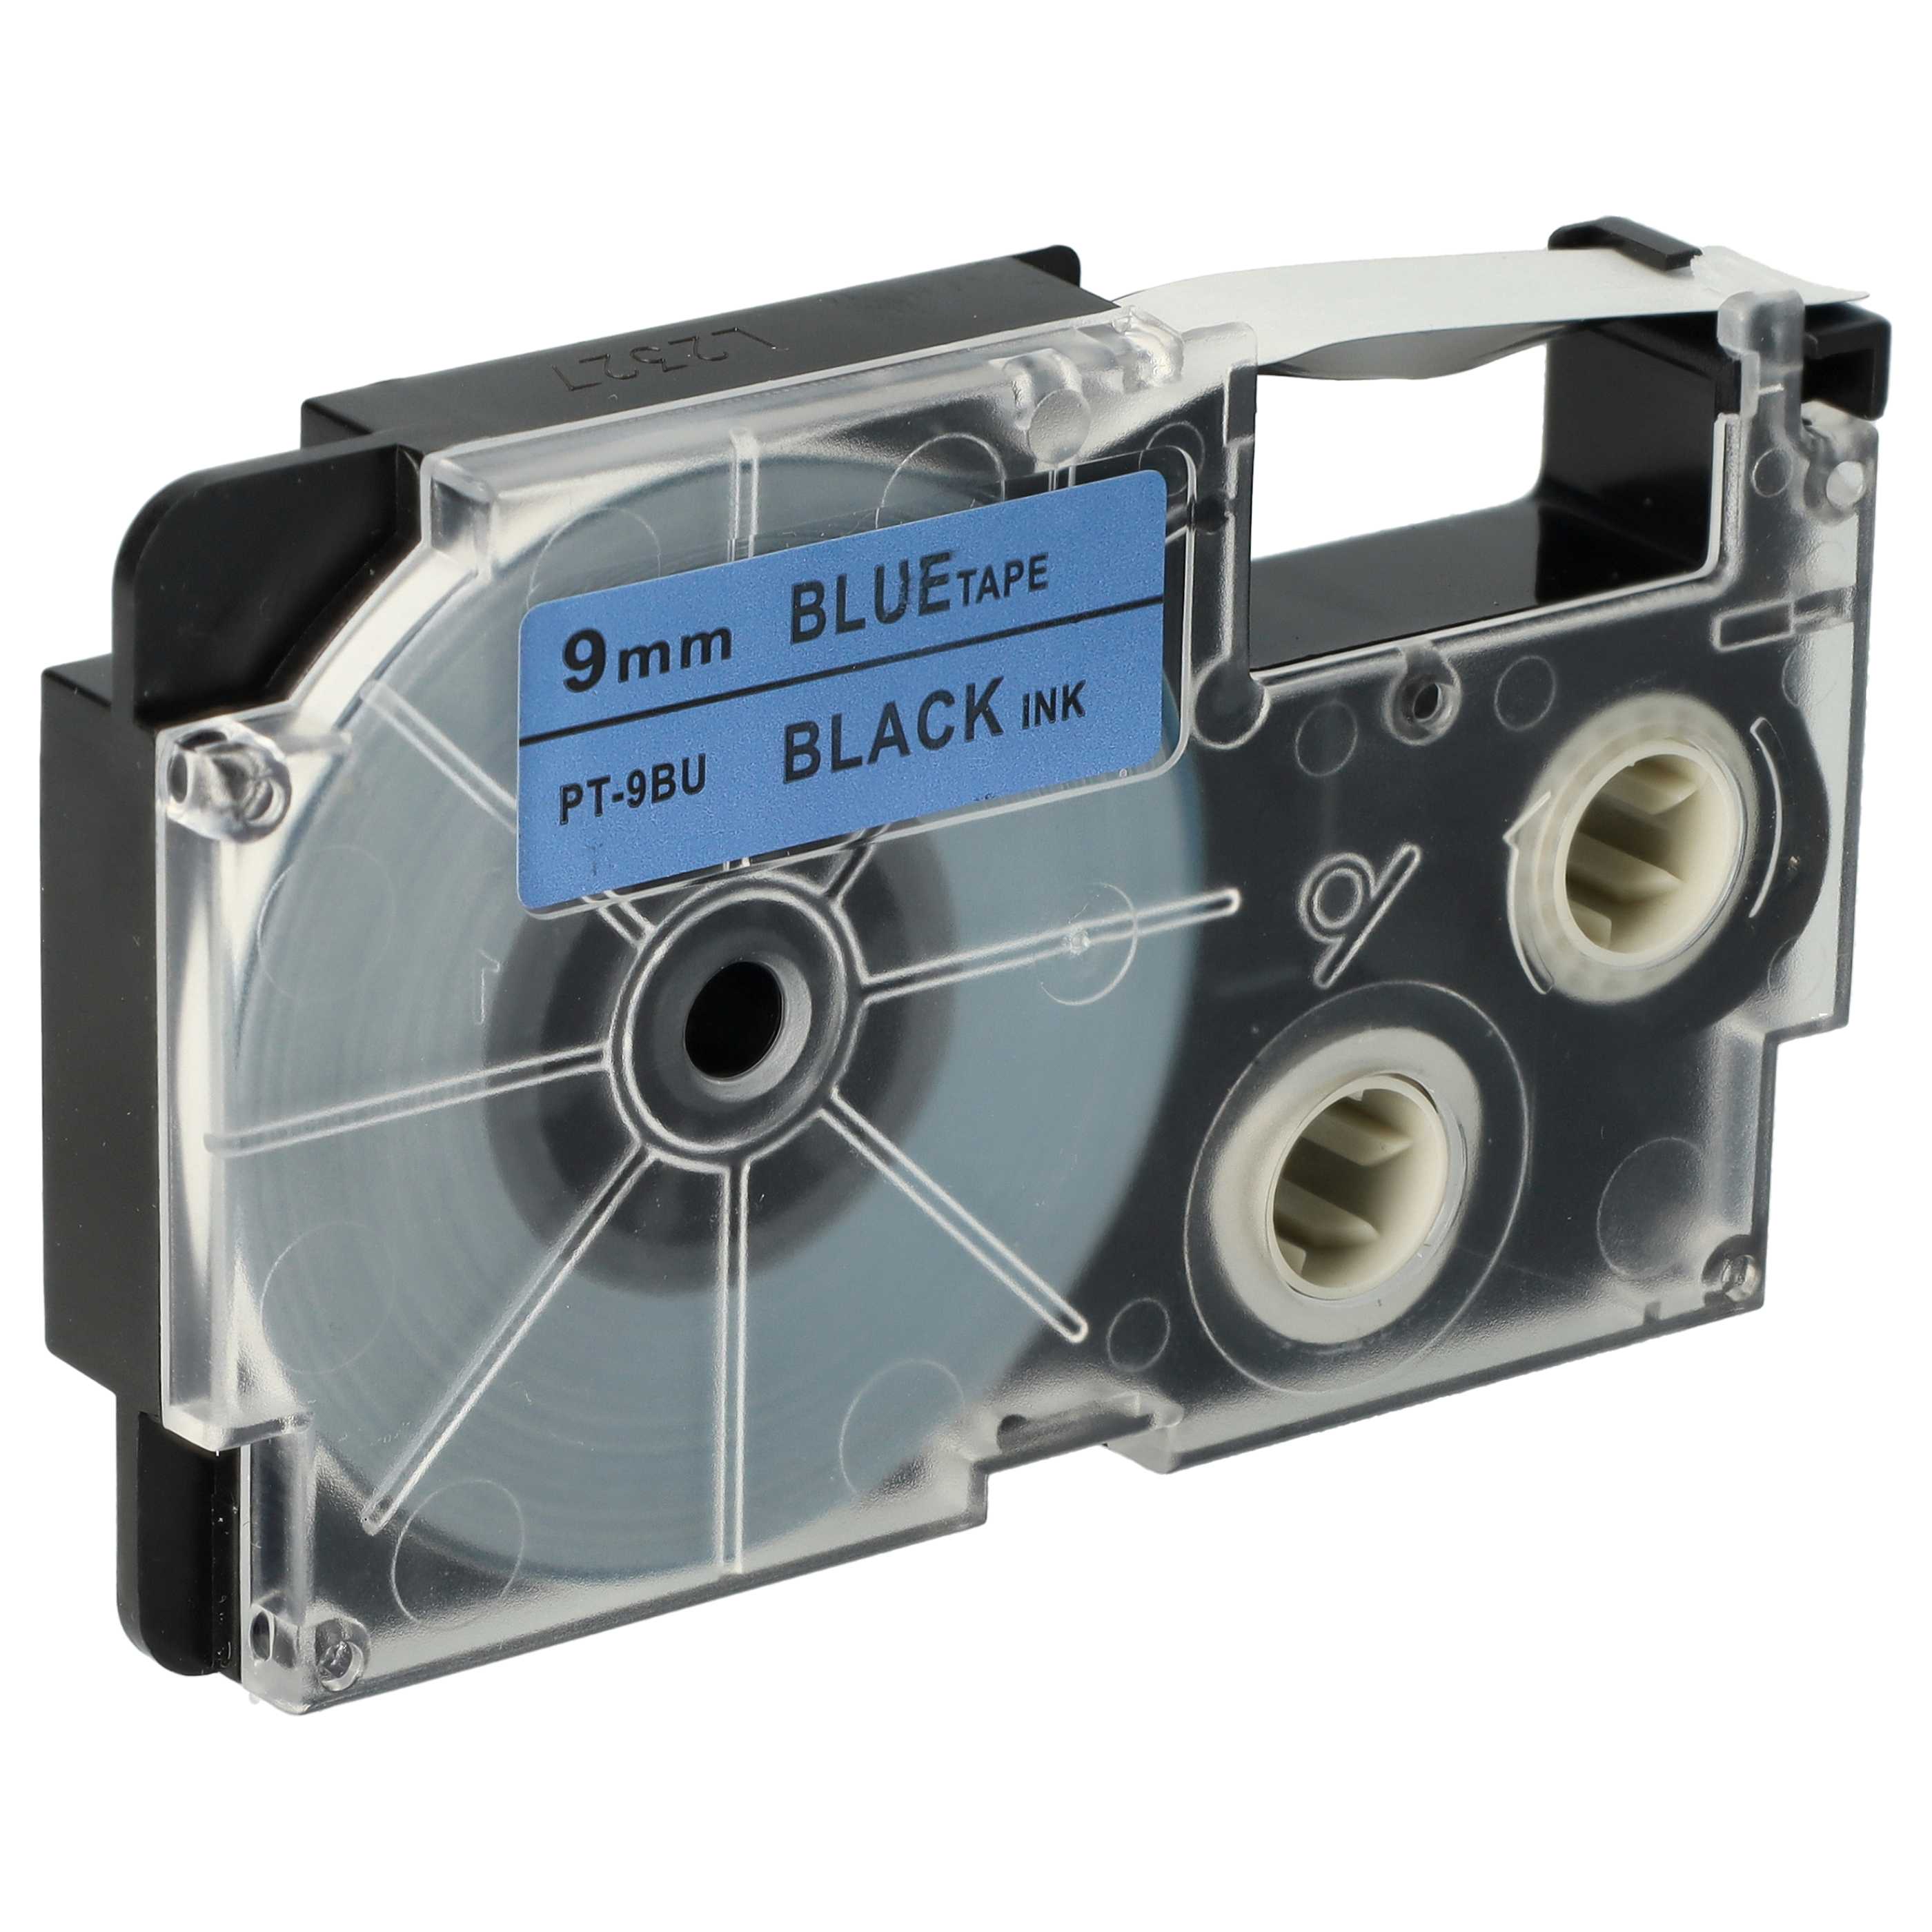 Cassetta nastro sostituisce Casio XR-9BU, XR-9BU1 per etichettatrice Casio 9mm nero su blu